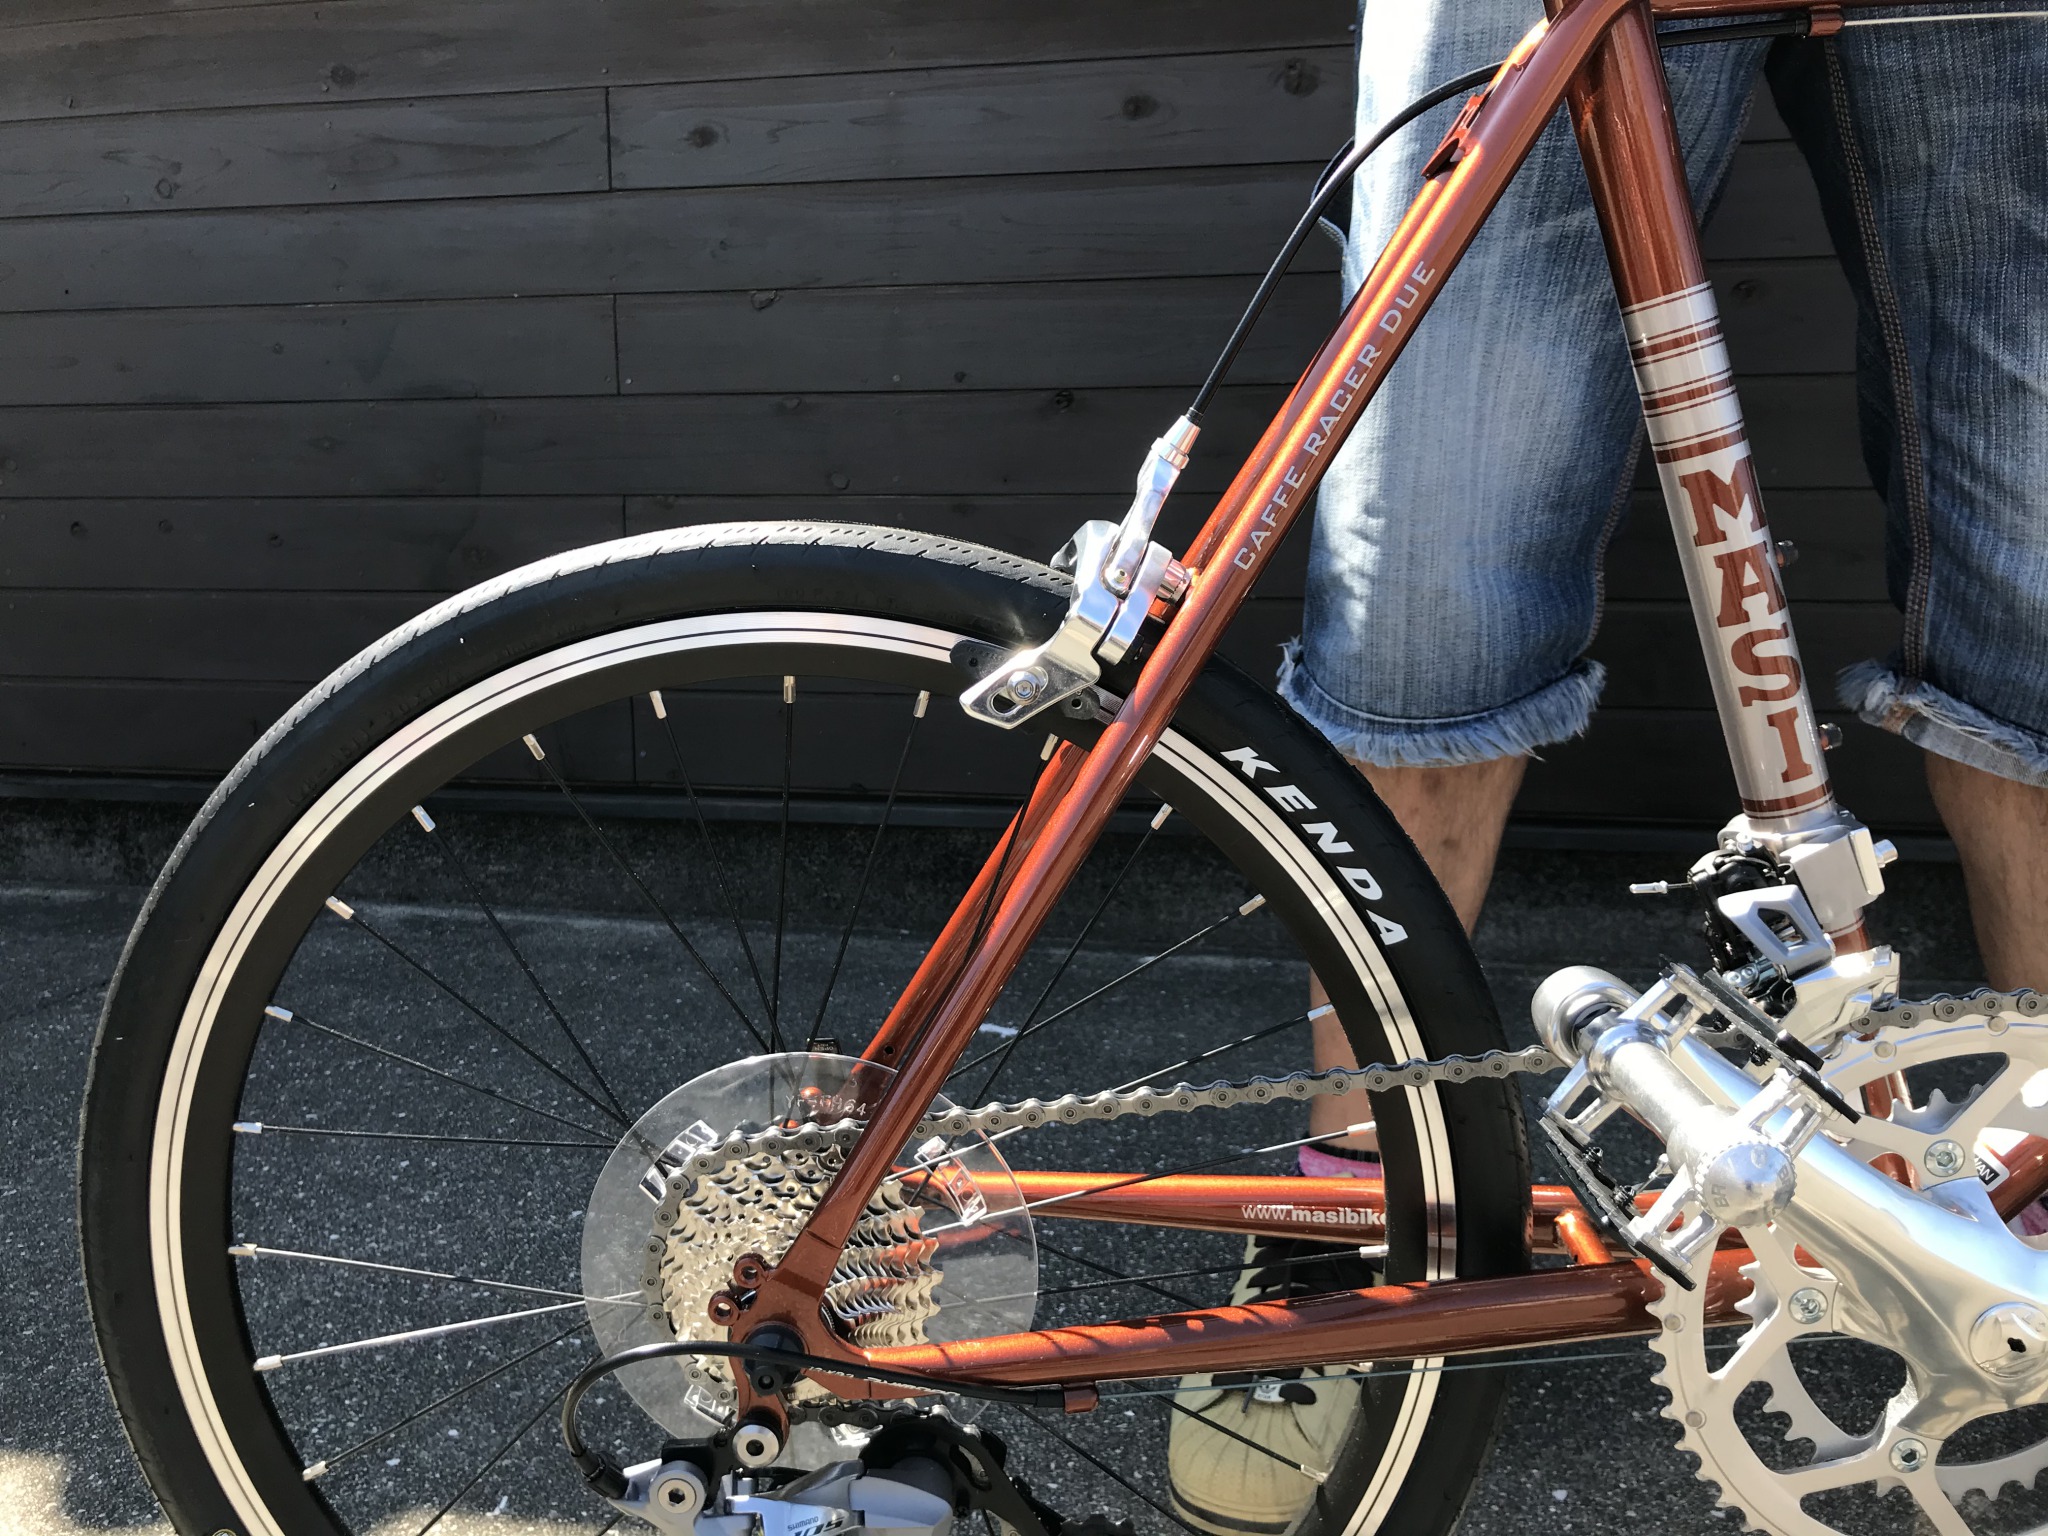 軽快な走りが魅力 -MINI VELO DUE DROP納車- – cyclemark サイクルマーク